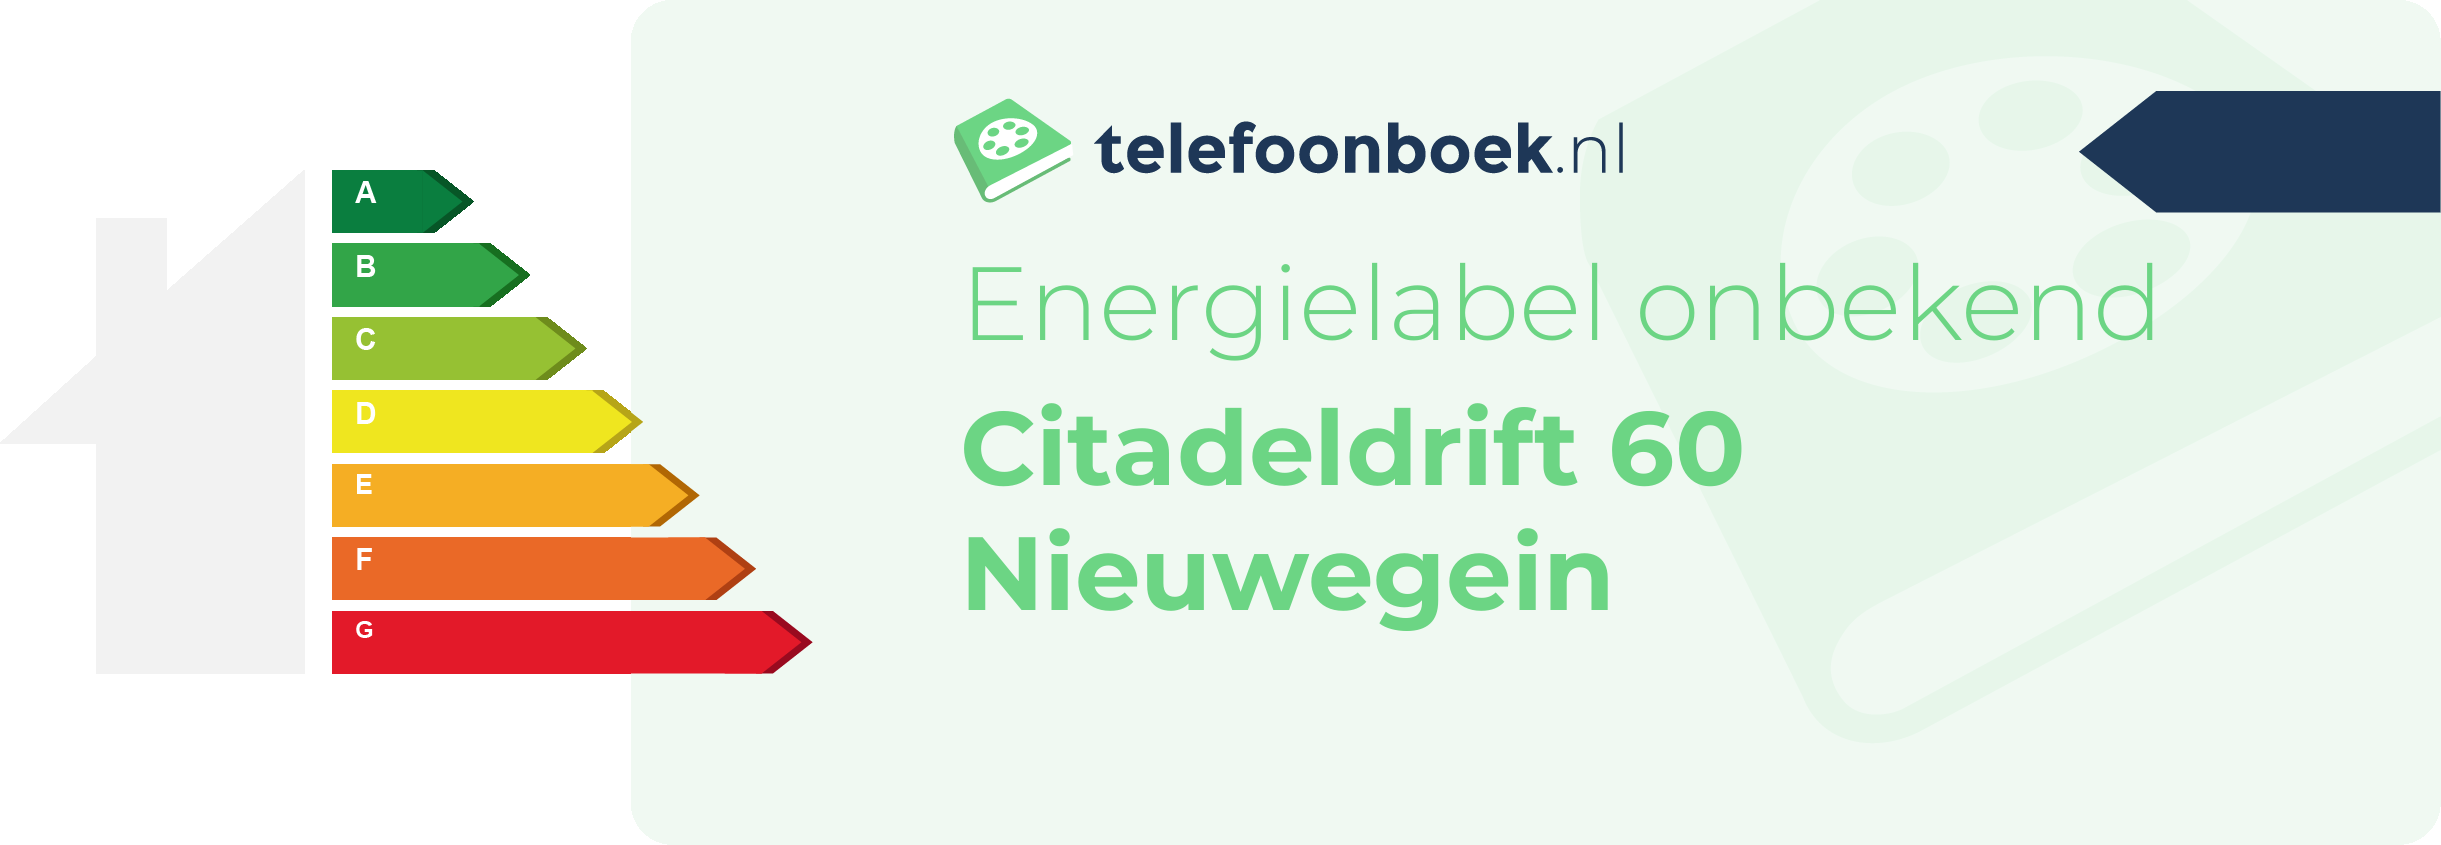 Energielabel Citadeldrift 60 Nieuwegein